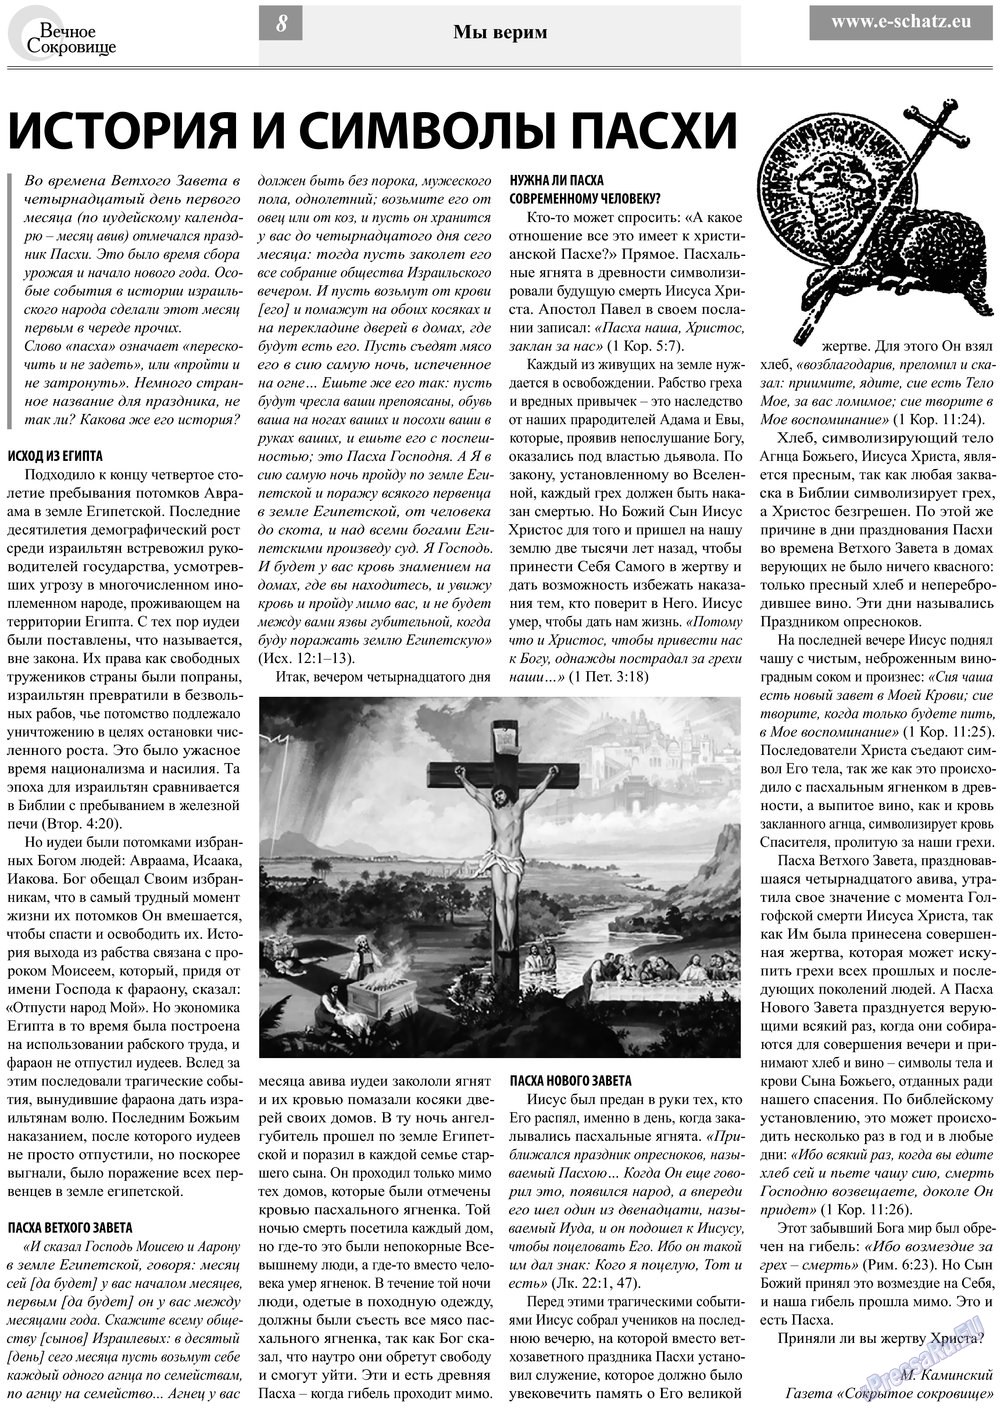 Вечное сокровище (газета). 2013 год, номер 2, стр. 8